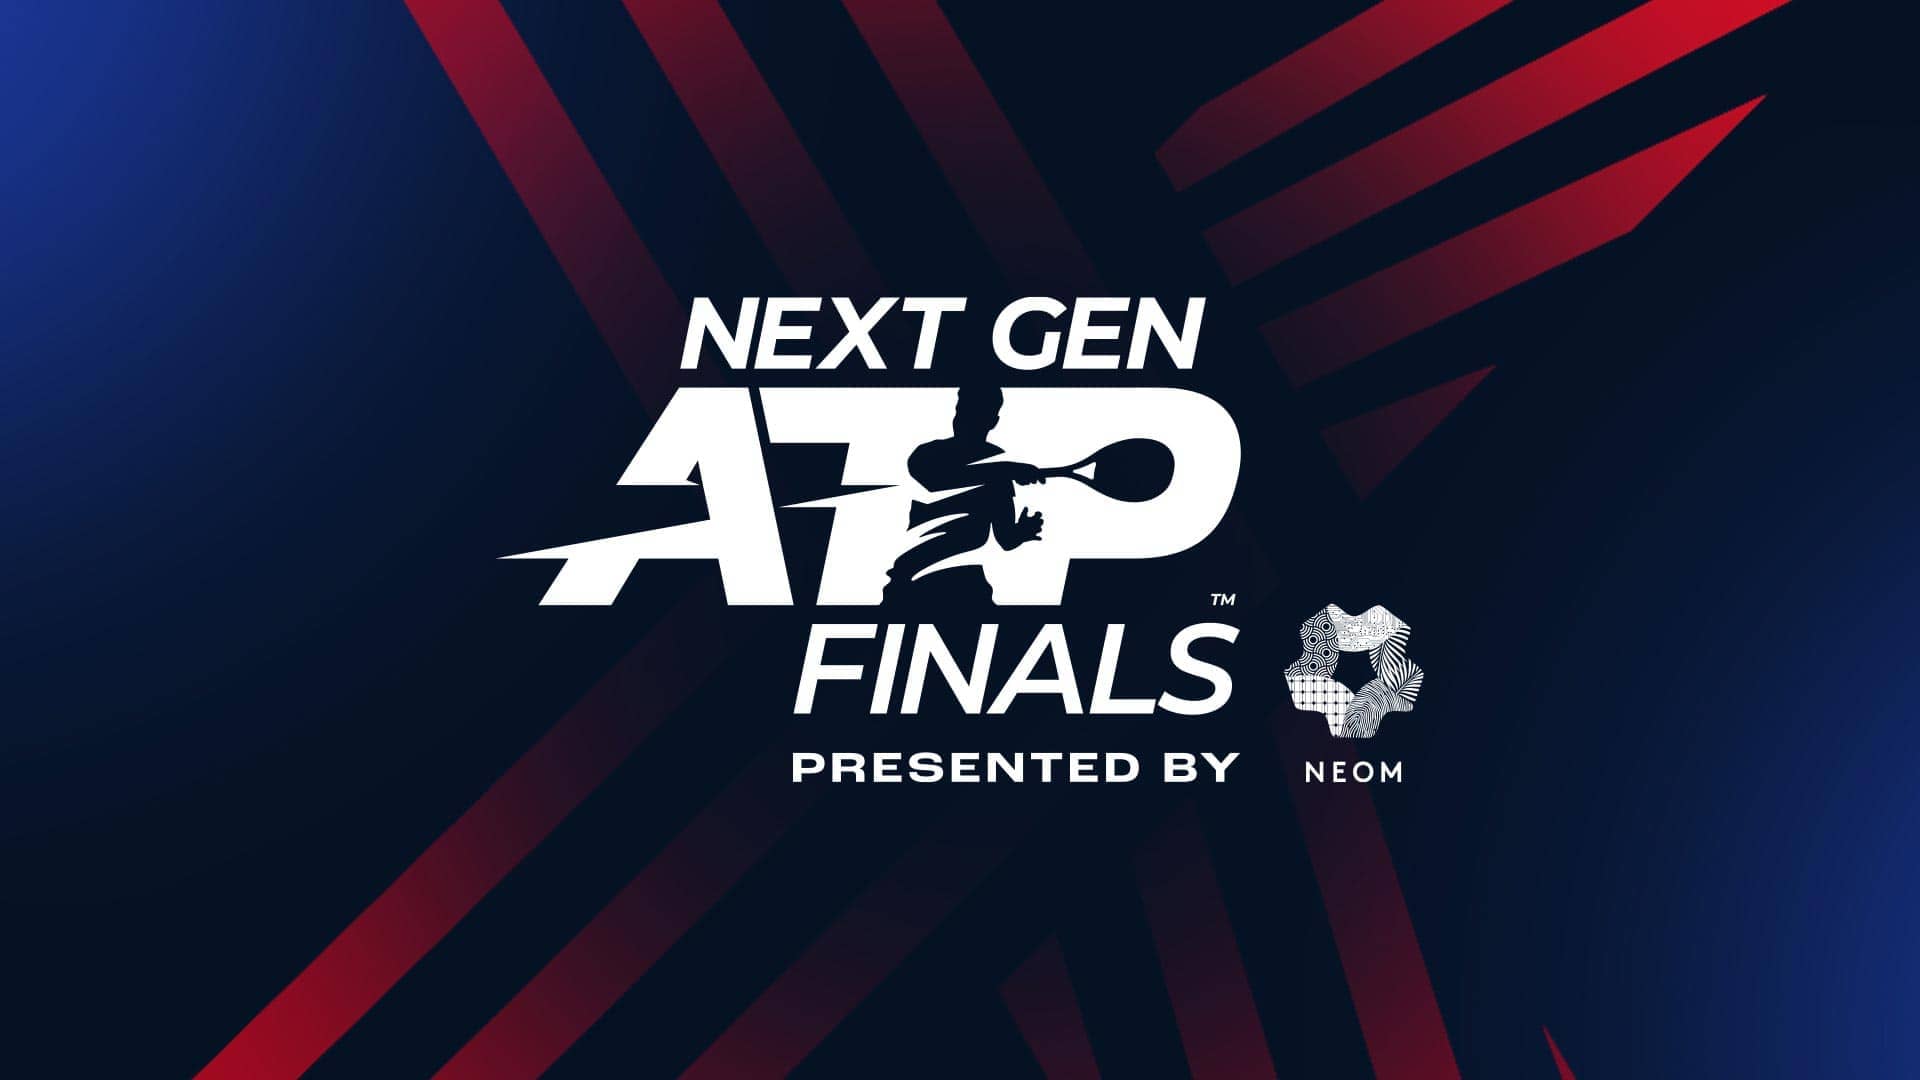 ATP World Final: Next Gen ATP Finals